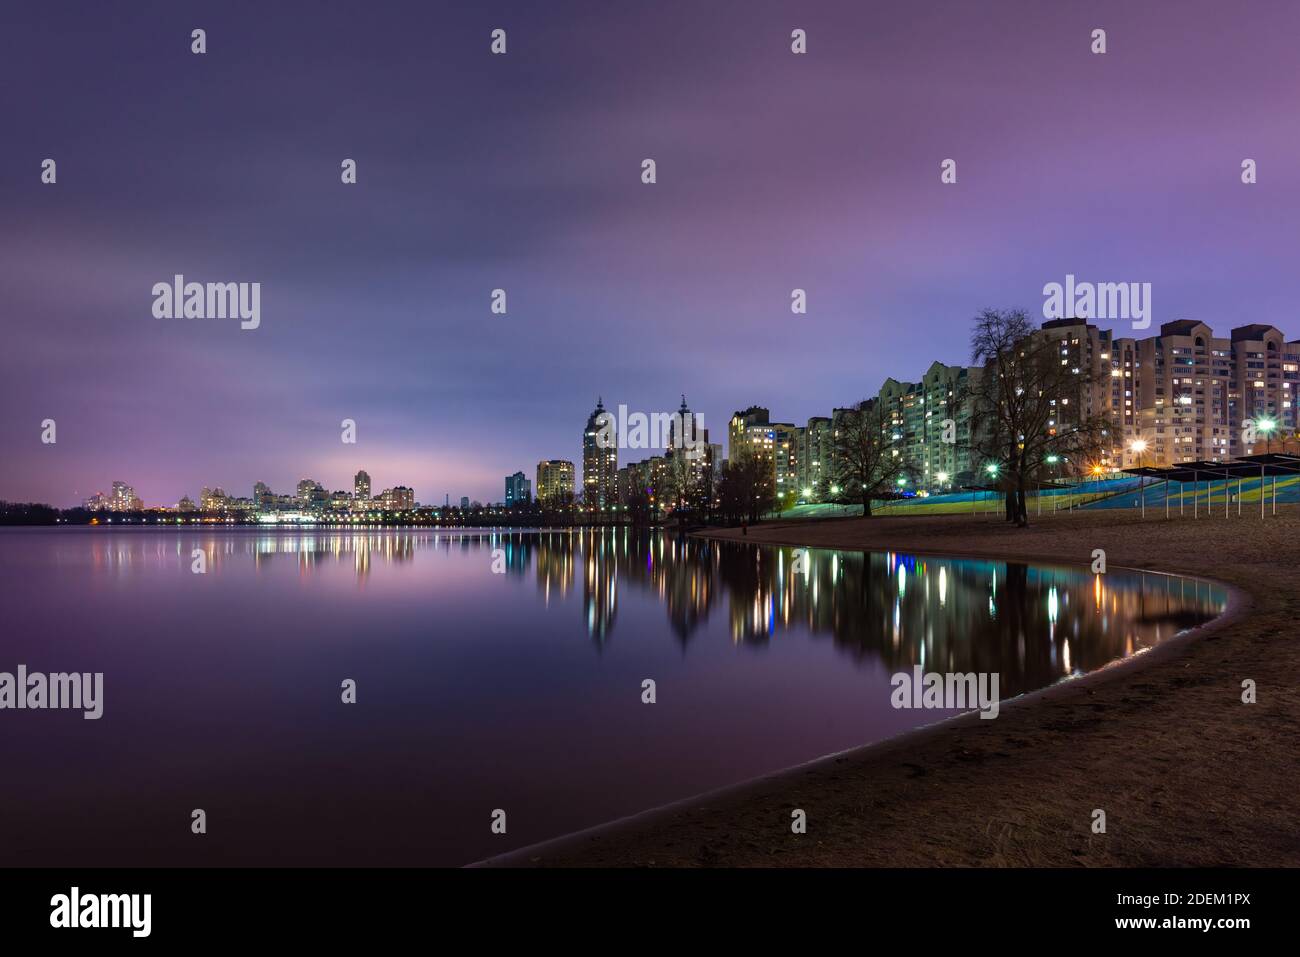 Vue nocturne des bâtiments modernes dans le quartier Obolon de Kiev, Ukraine, près du fleuve Dnieper, les lumières se reflètent sur l'eau calme. Banque D'Images